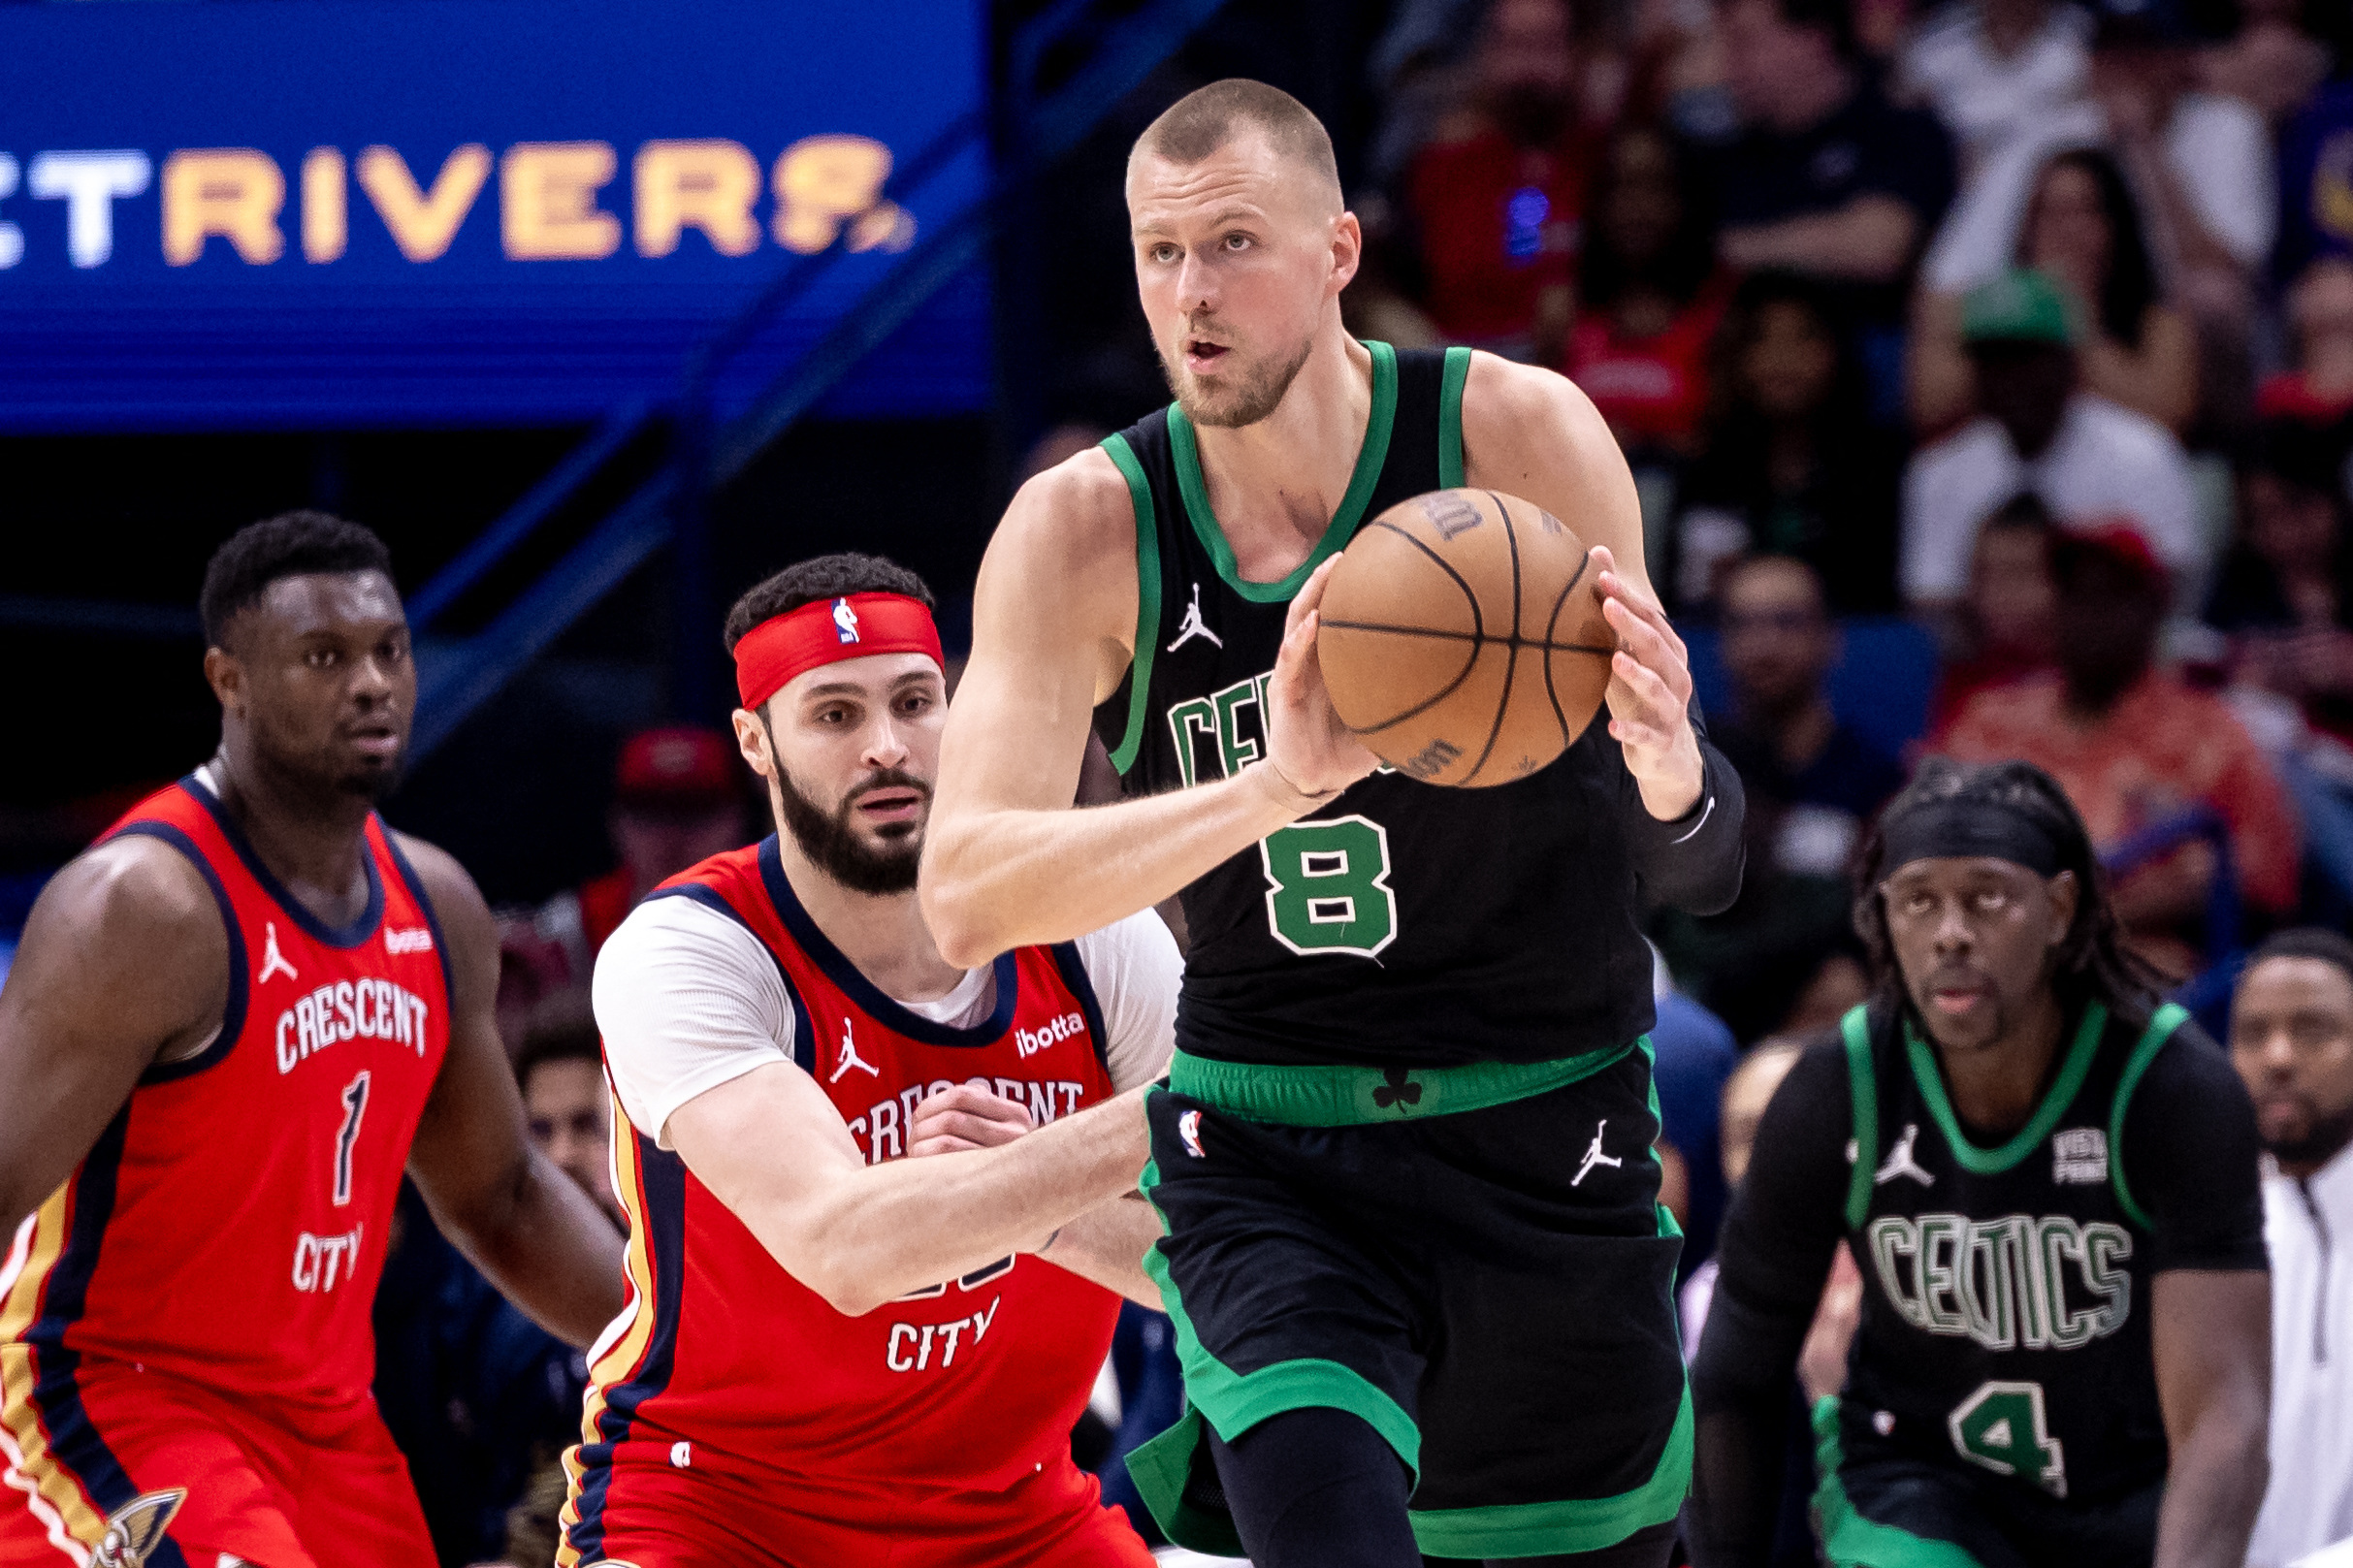 NBA: After tough start, Celtics shut down Pelicans